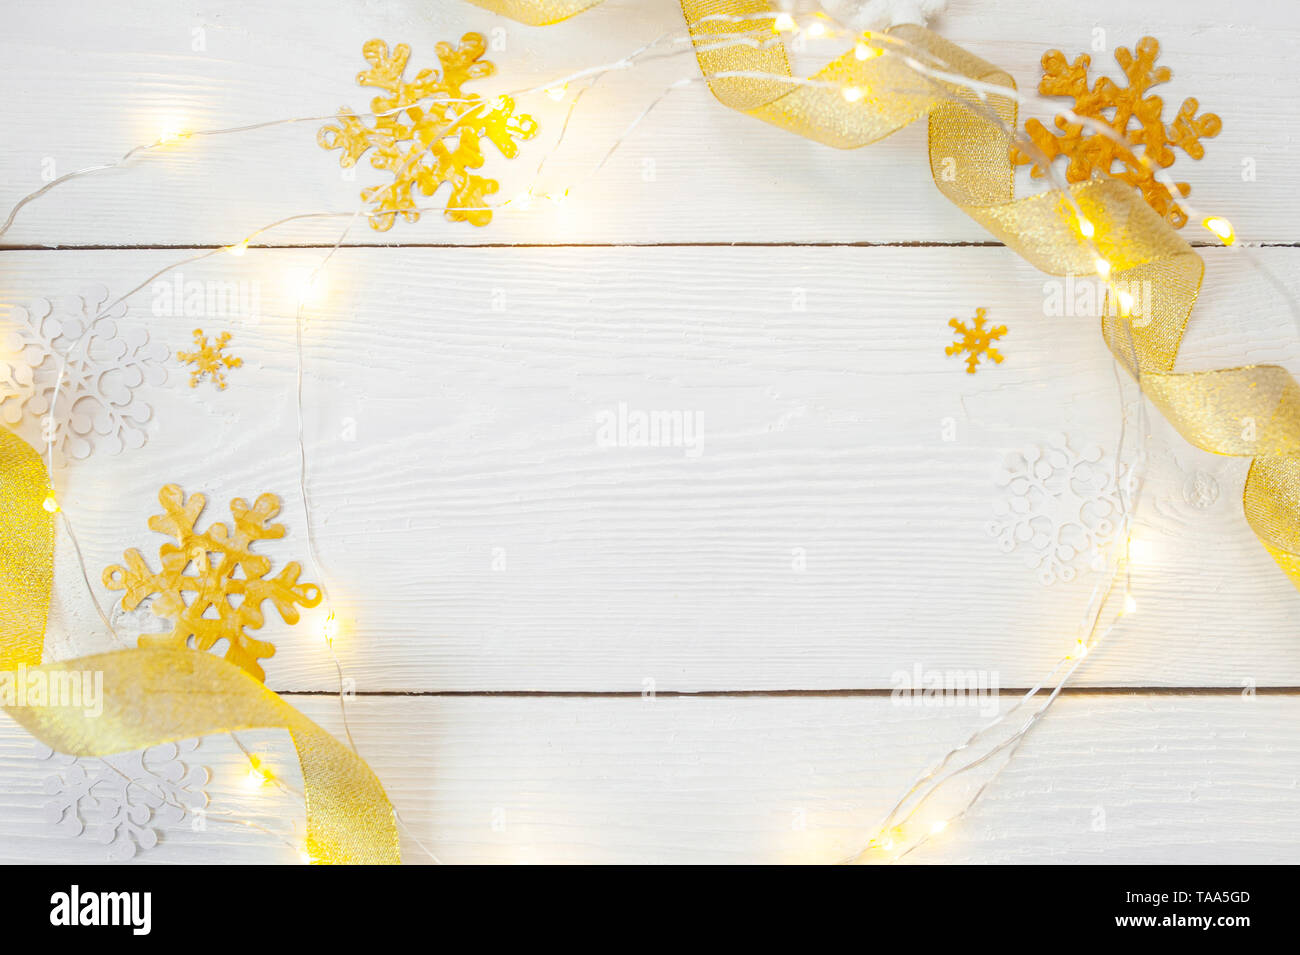 Weihnachten Hintergrund für Grußkarte mit Platz für Text. Weihnachten goldene Spielzeug und Band auf Holzhintergrund. Flach liegend, Draufsicht Fotomockup Stockfoto